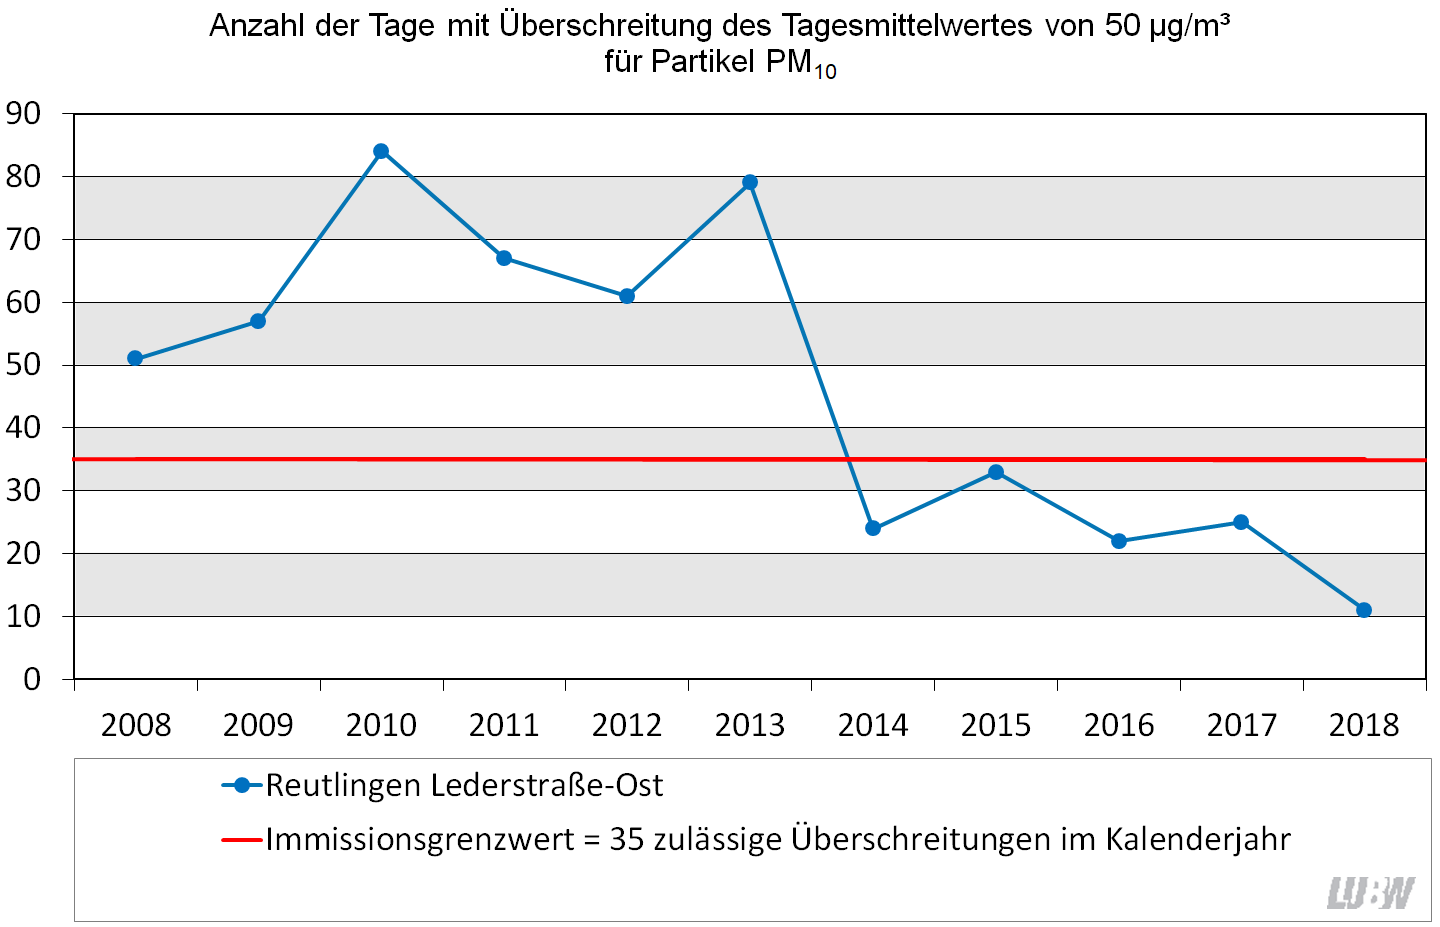 Entwicklung der Anzahl der Tage mit Überschreitung des Tagesmittelwertes von 50 µg/m³ für Partikel PM10 an der Verkehrsmessstation Reutlingen Lederstraße-Ost als Liniendiagramm dargestellt